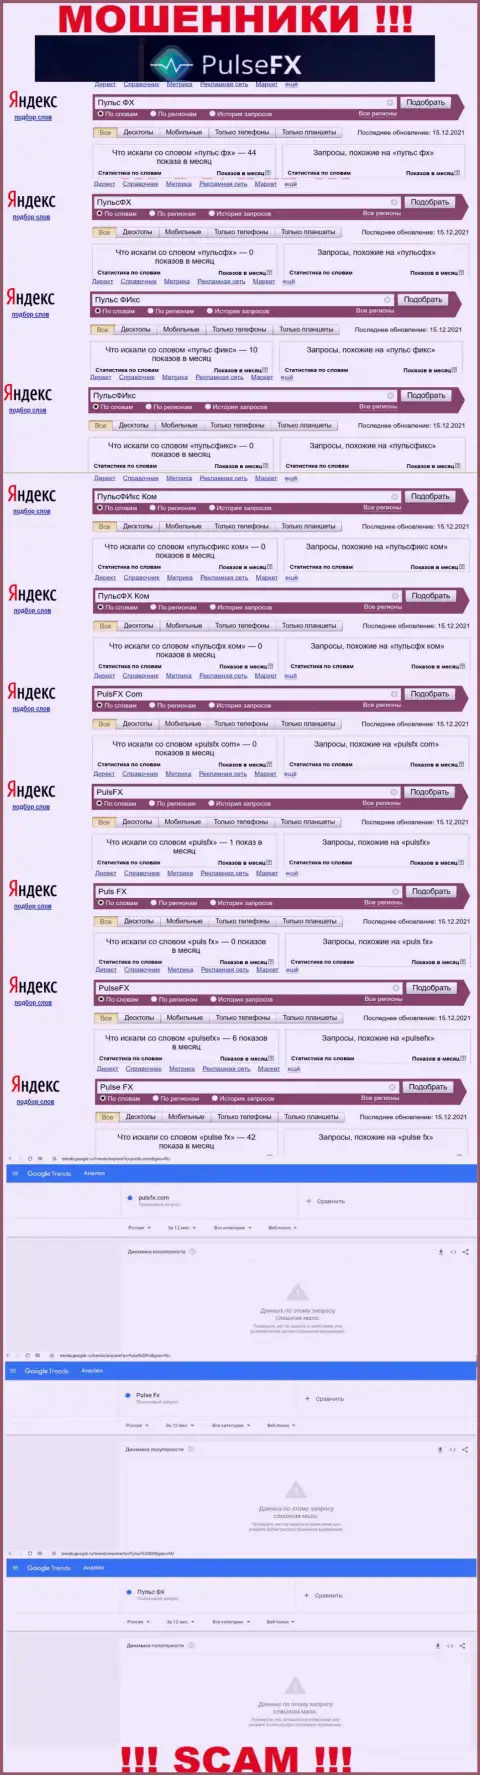 Суммарное число online-запросов в сети Интернет по бренду мошенников PulseFX